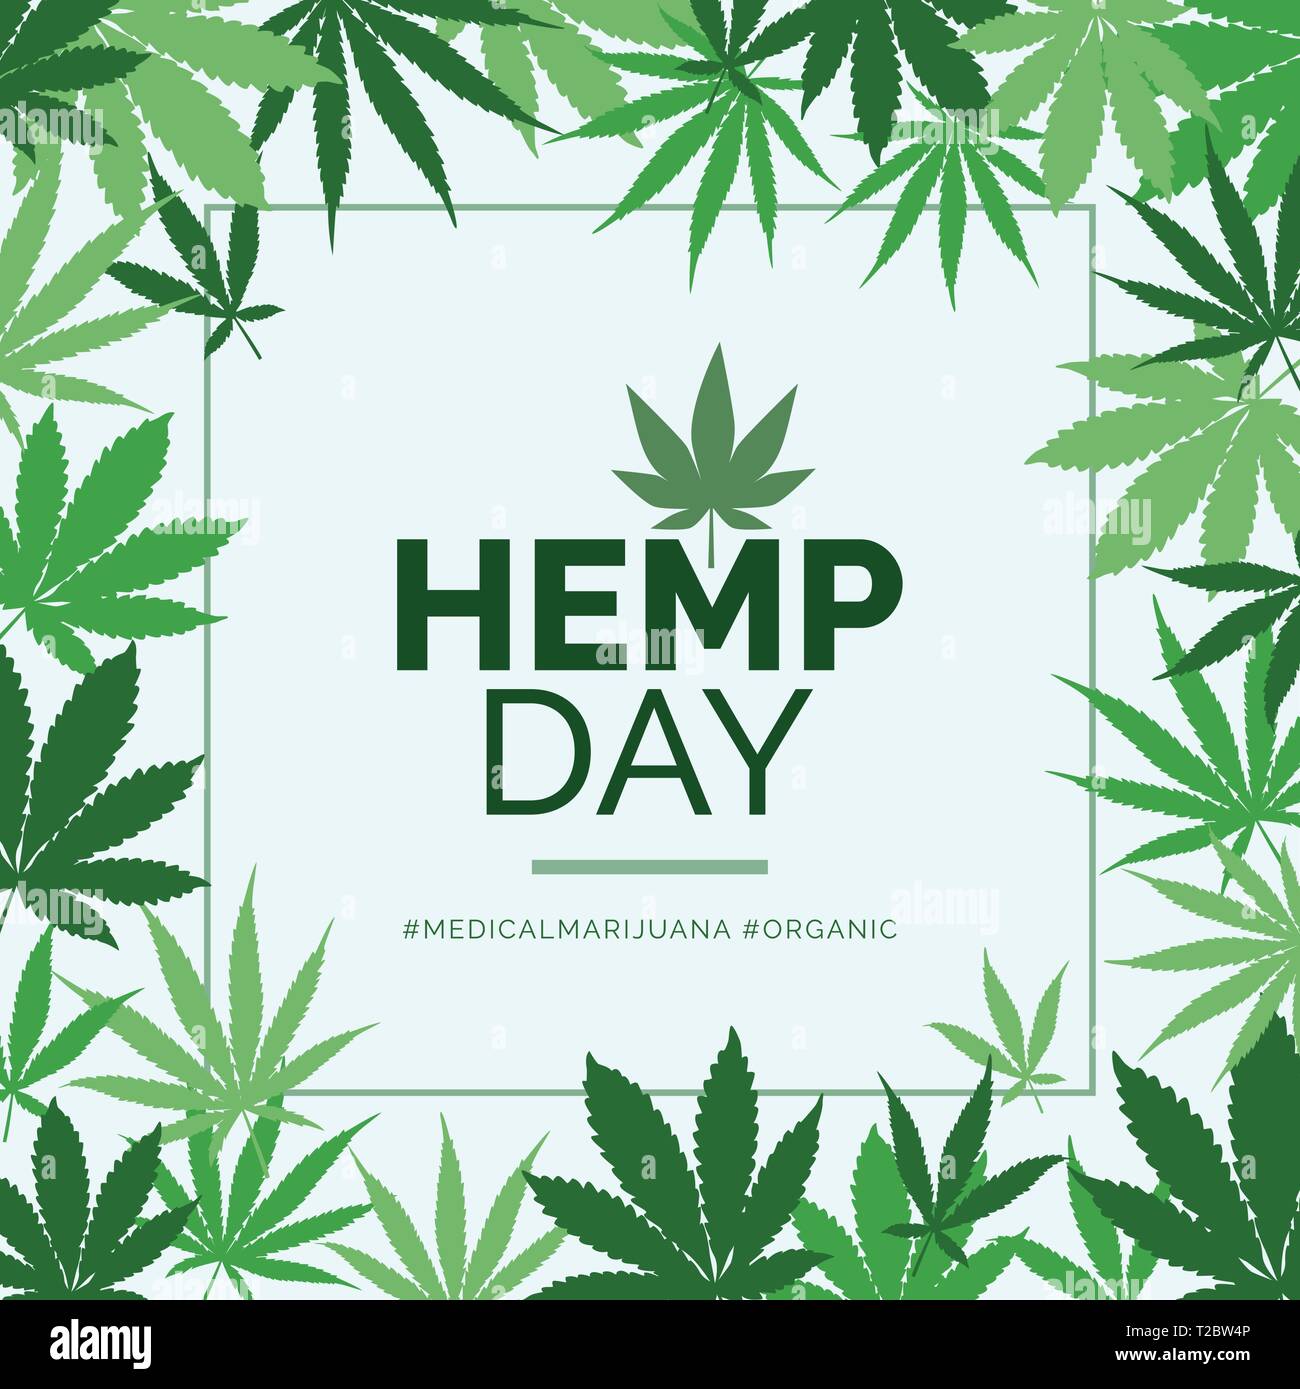 Hanf Tag und medizinisches Marihuana Werbung mit grünen Blättern frame Stock Vektor